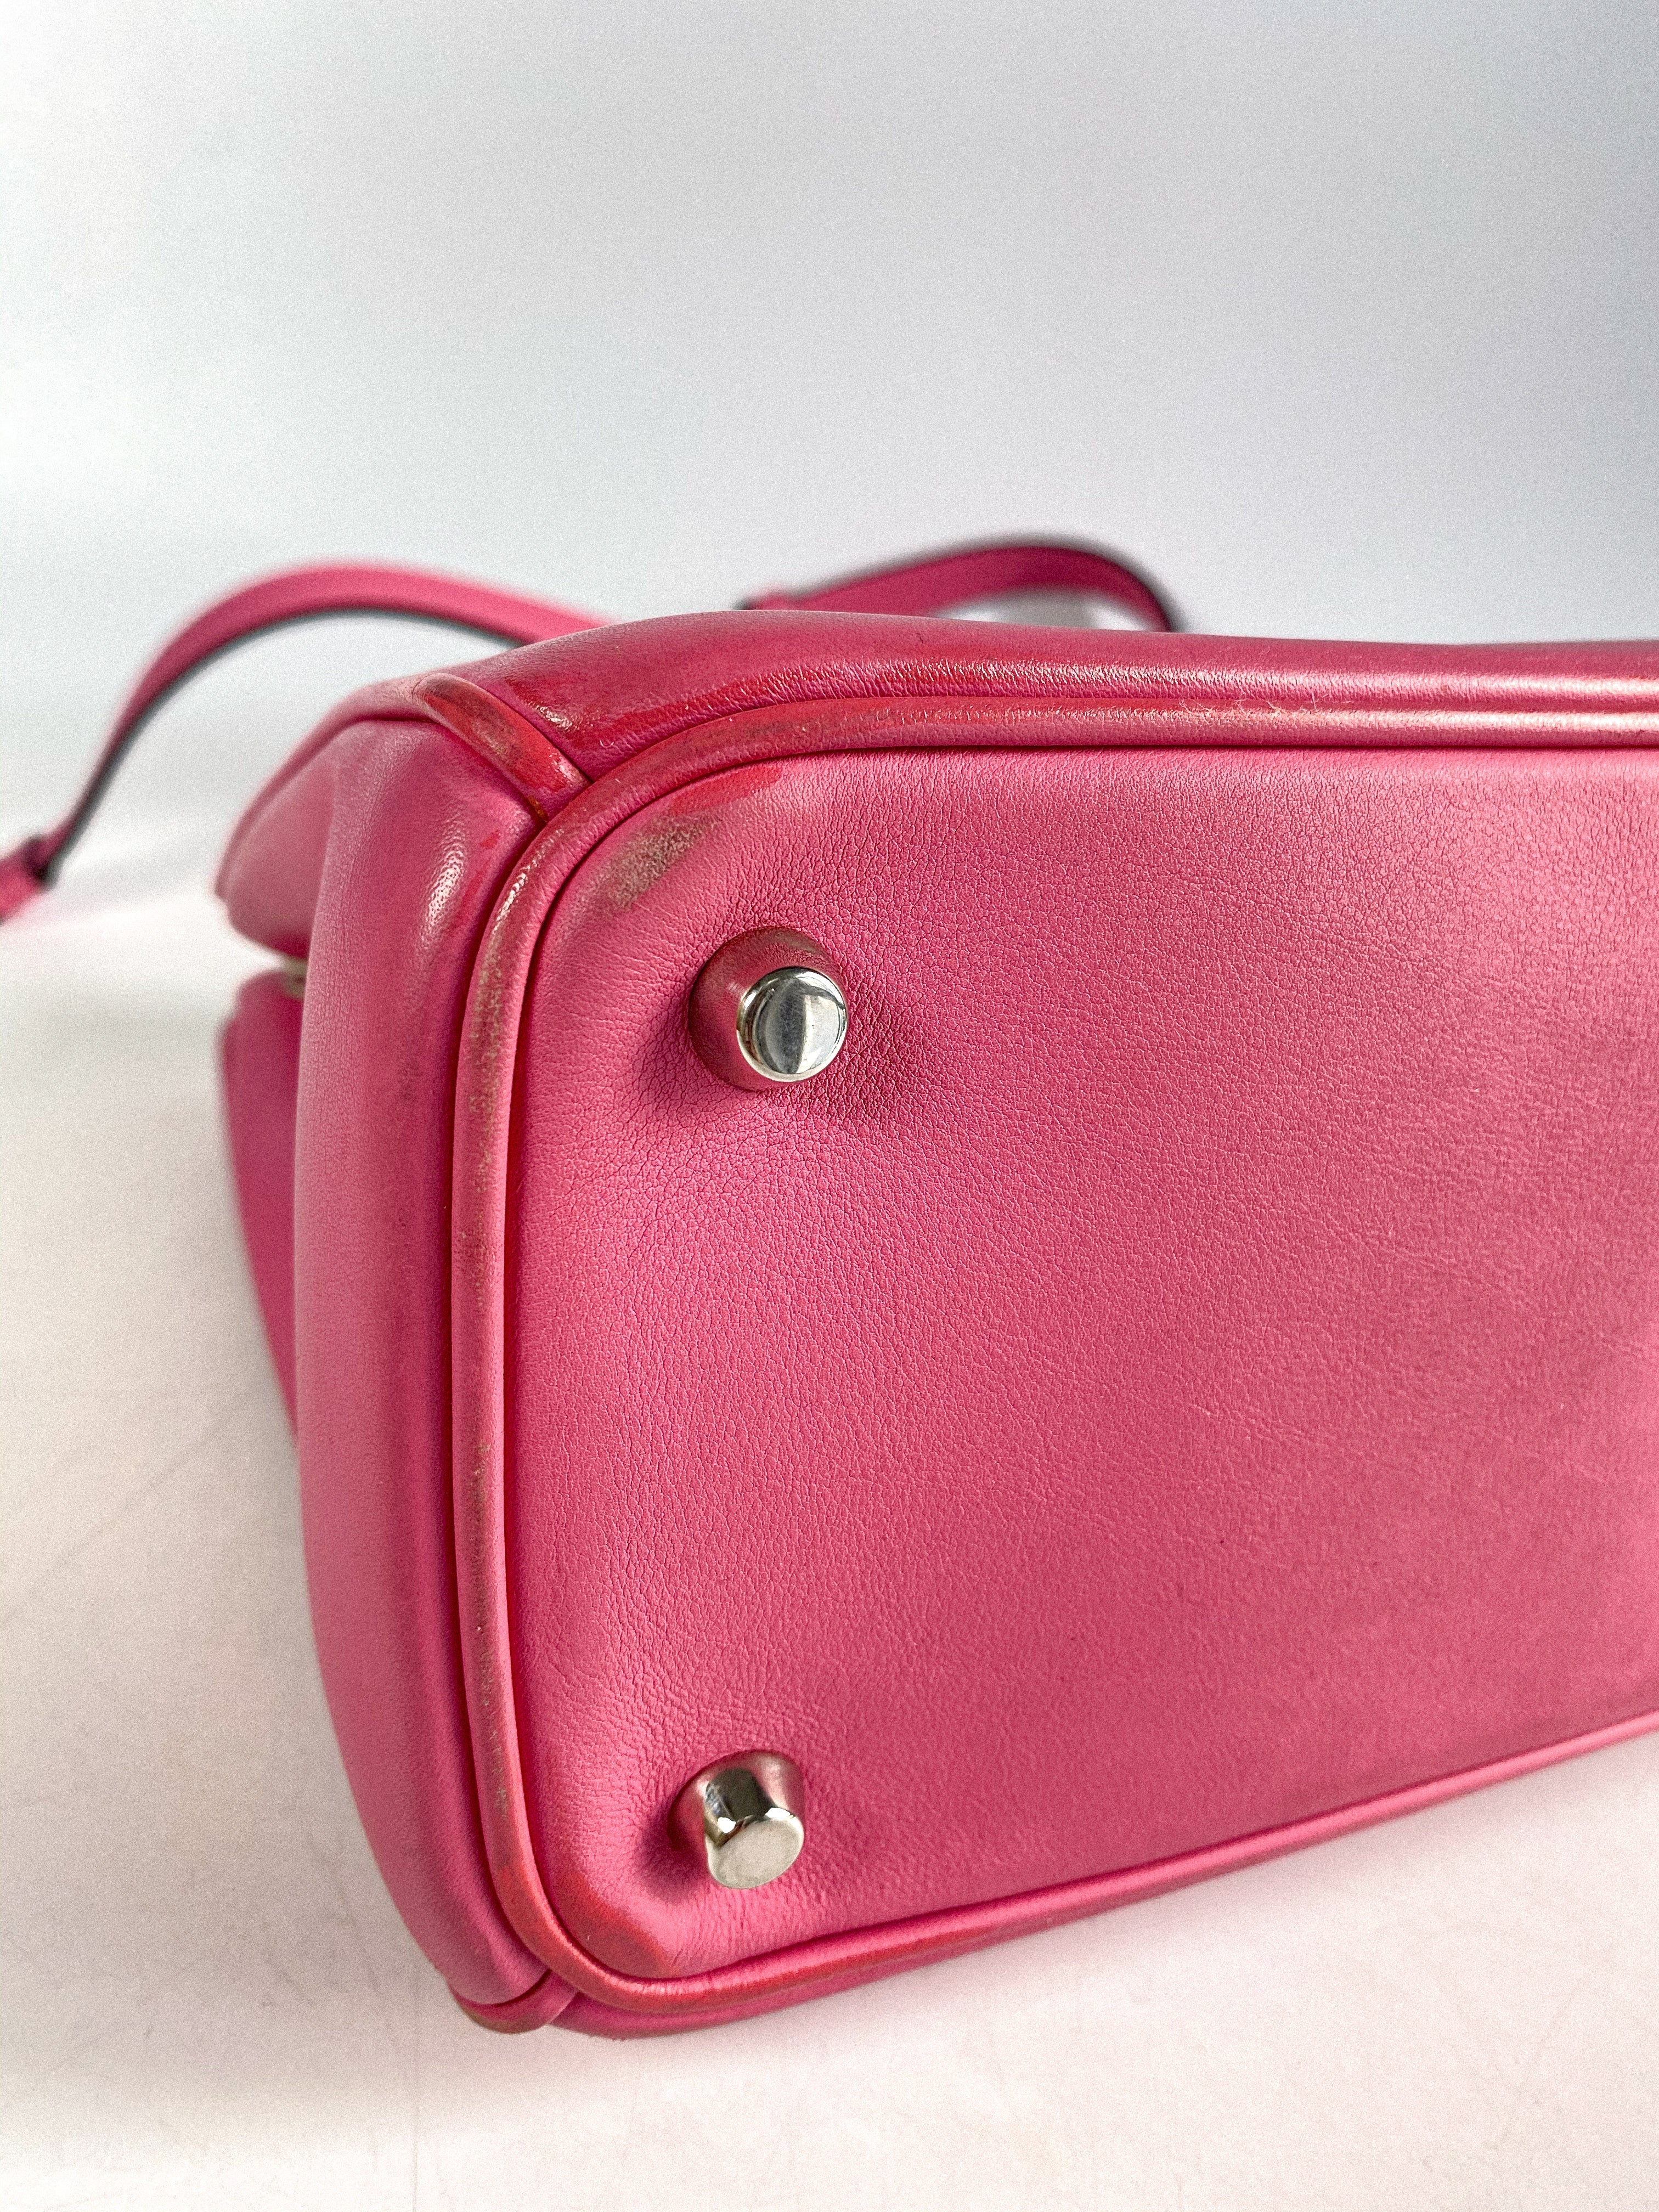 Christian Dior Diorissimo Pink Leather Bag